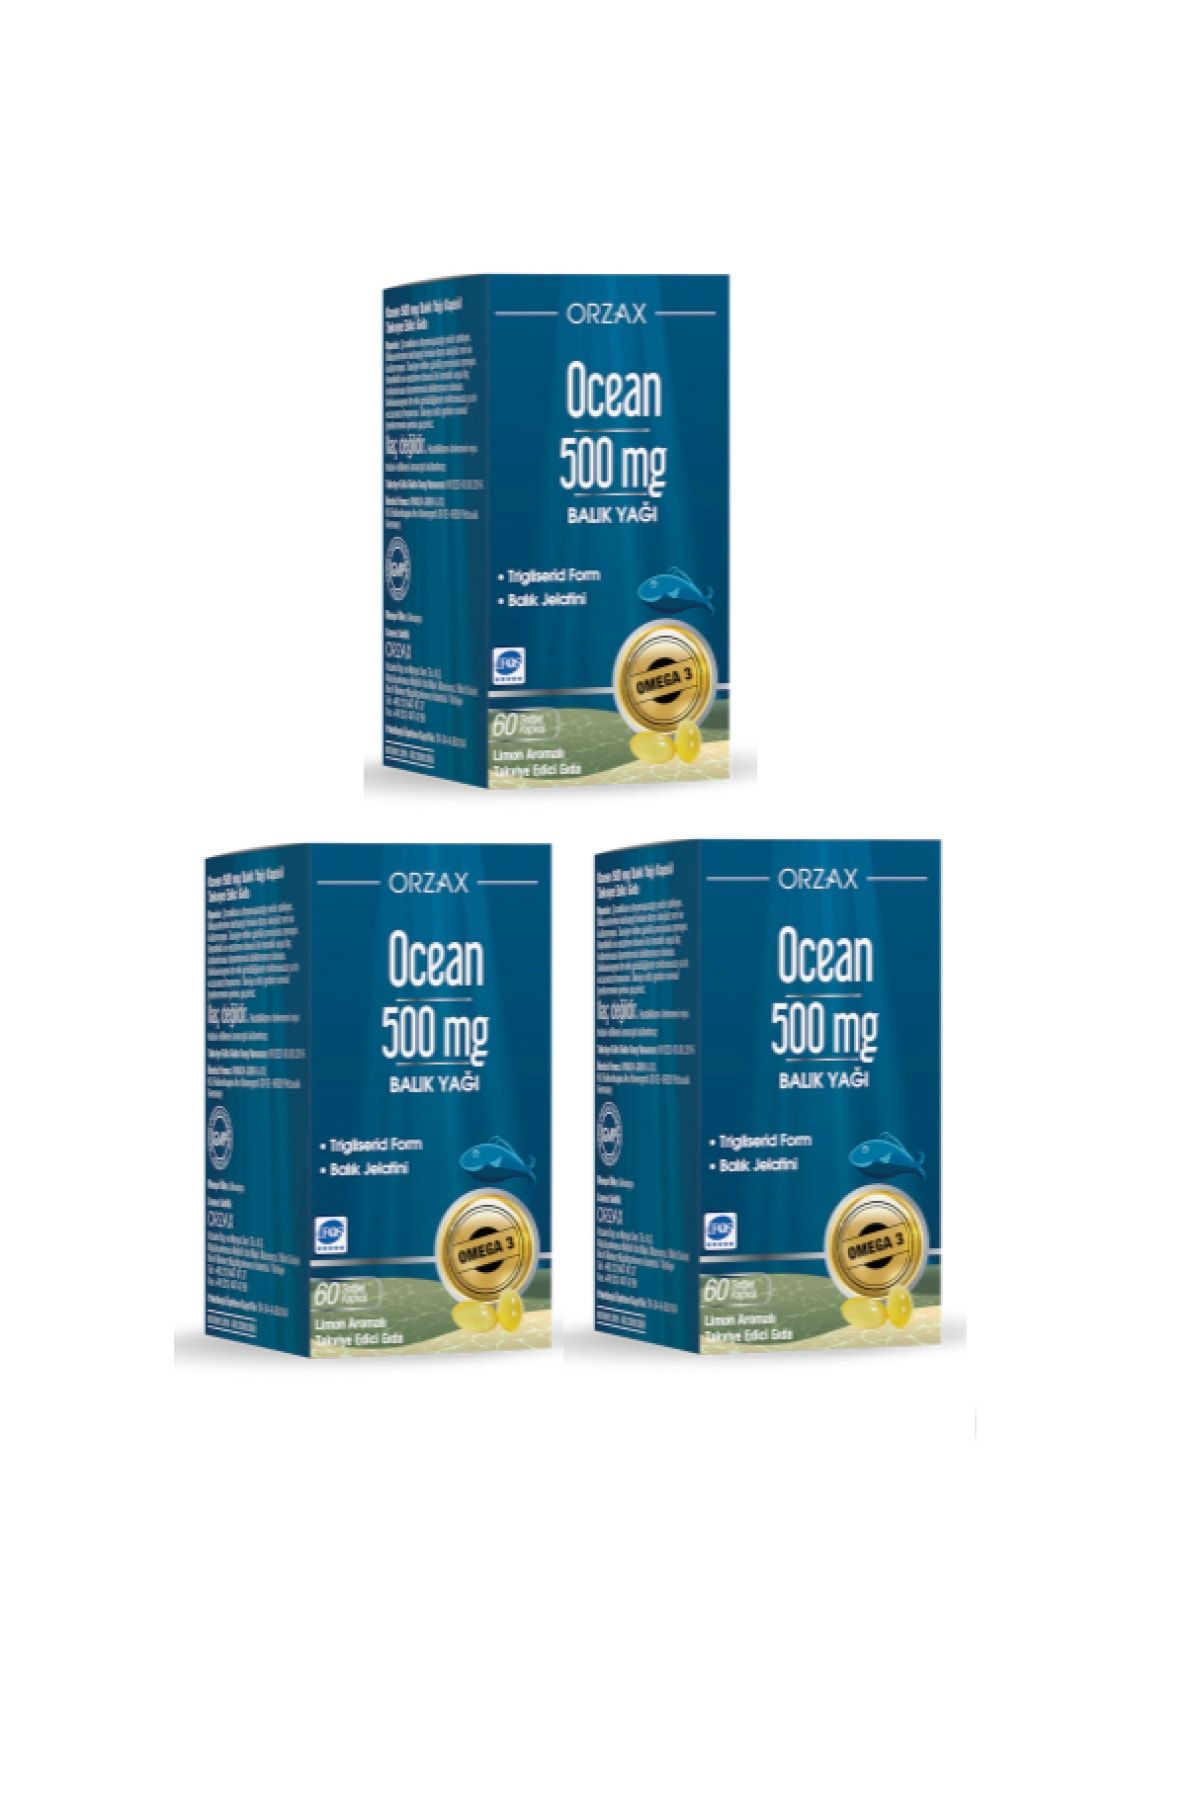 Ocean Saf Balık Yağı 500mg 60 Kapsülx3 Adet